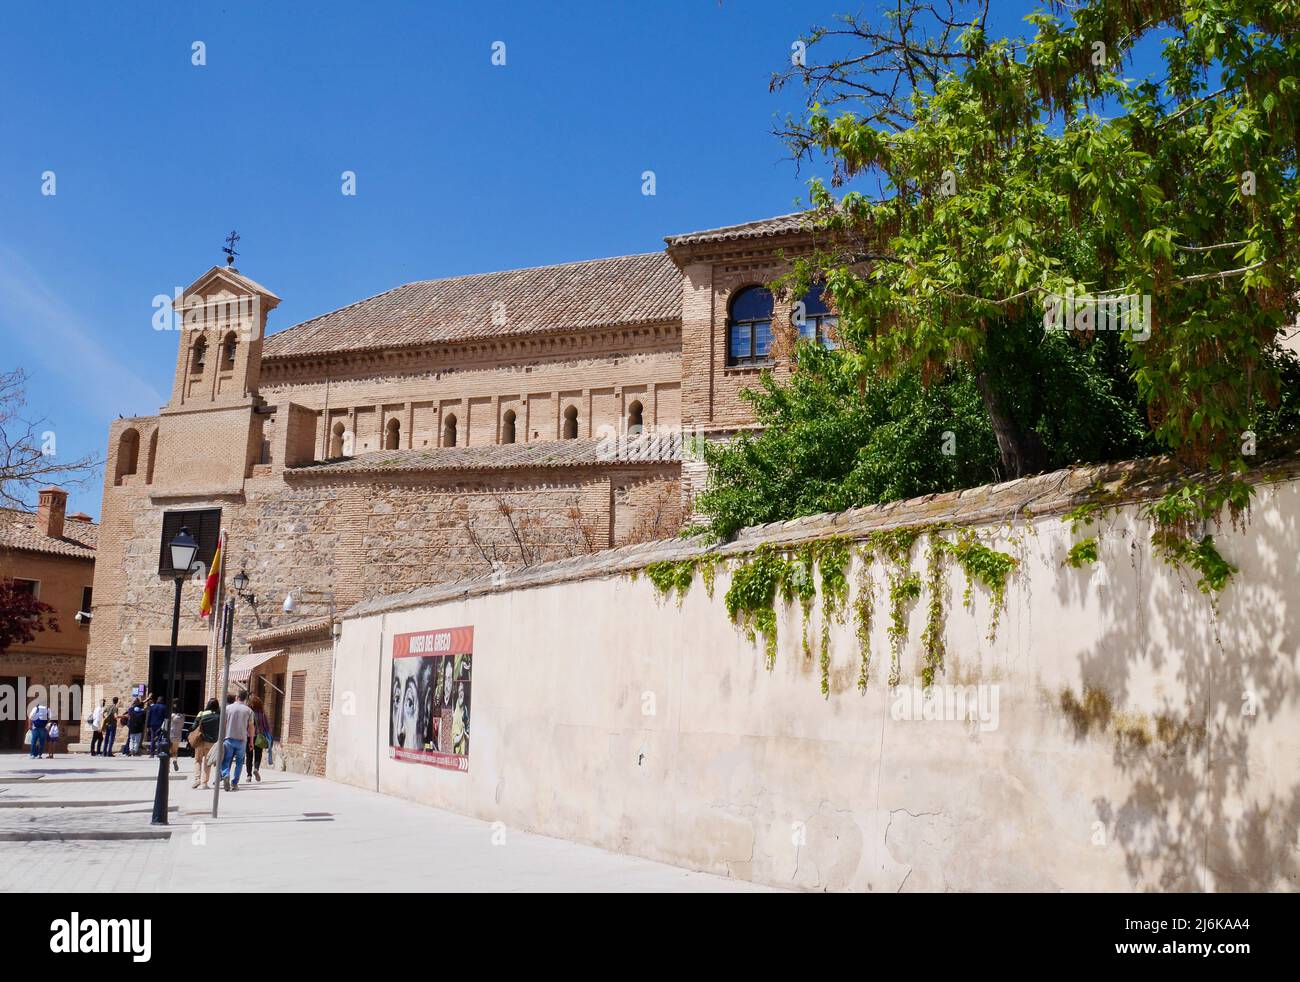 Panoramablick auf die Synagoge von Transito, in der das Sefardi-Museum im jüdischen Viertel von Toledo, Kastilien-La Mancha, Spanien, untergebracht ist. Hochwertige Fotos Stockfoto